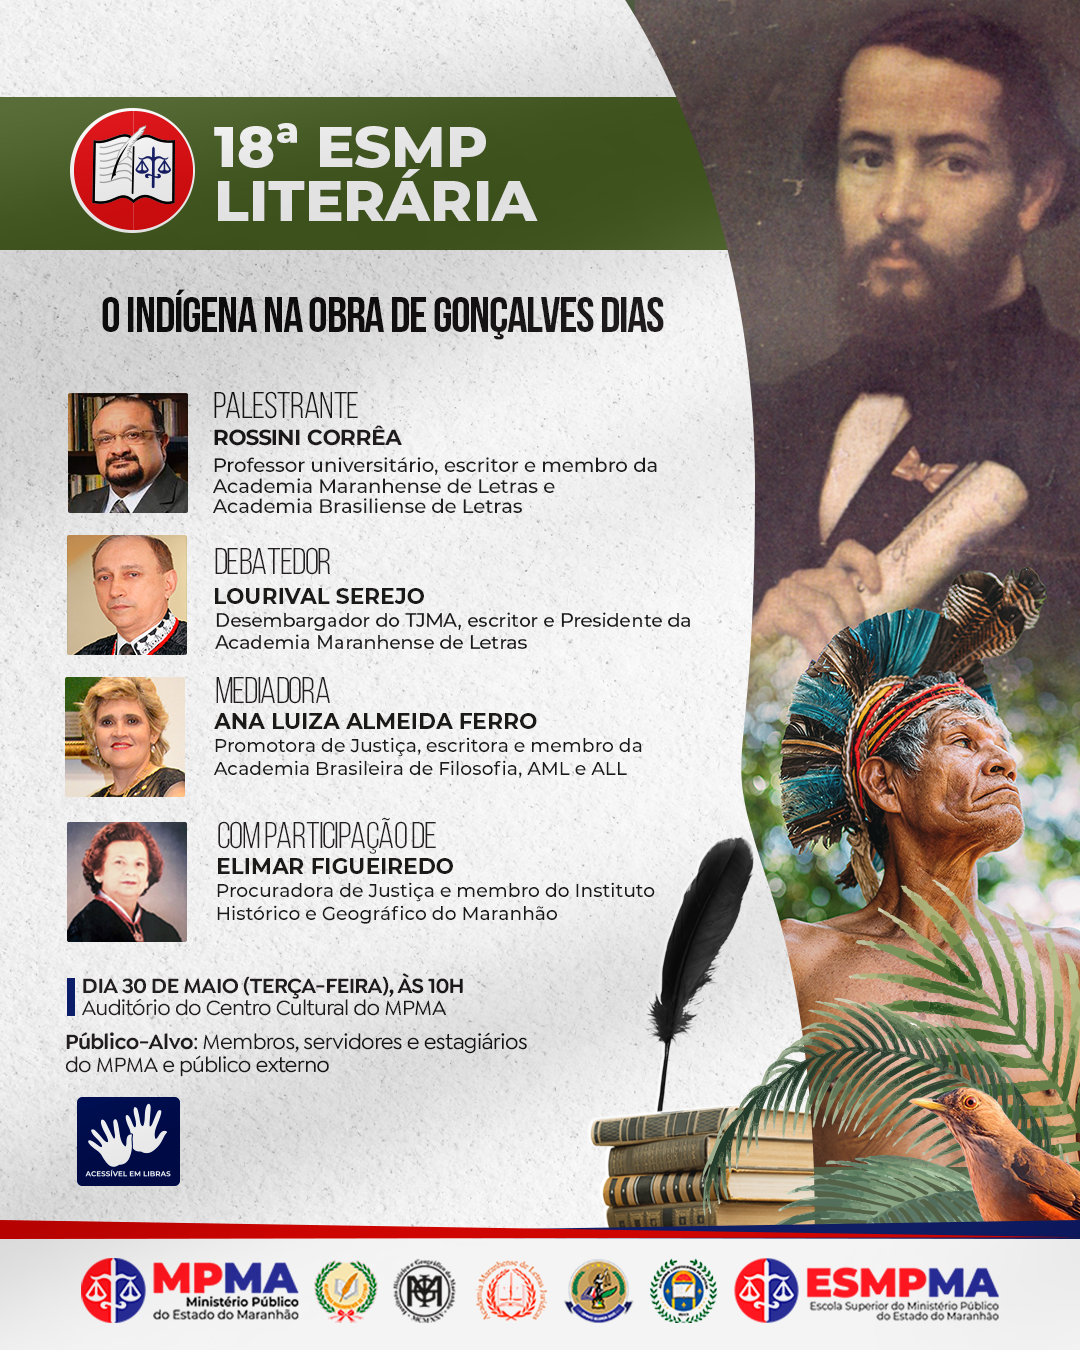 18ª ESMP Literária "O indígena na obra de Gonçalves Dias"